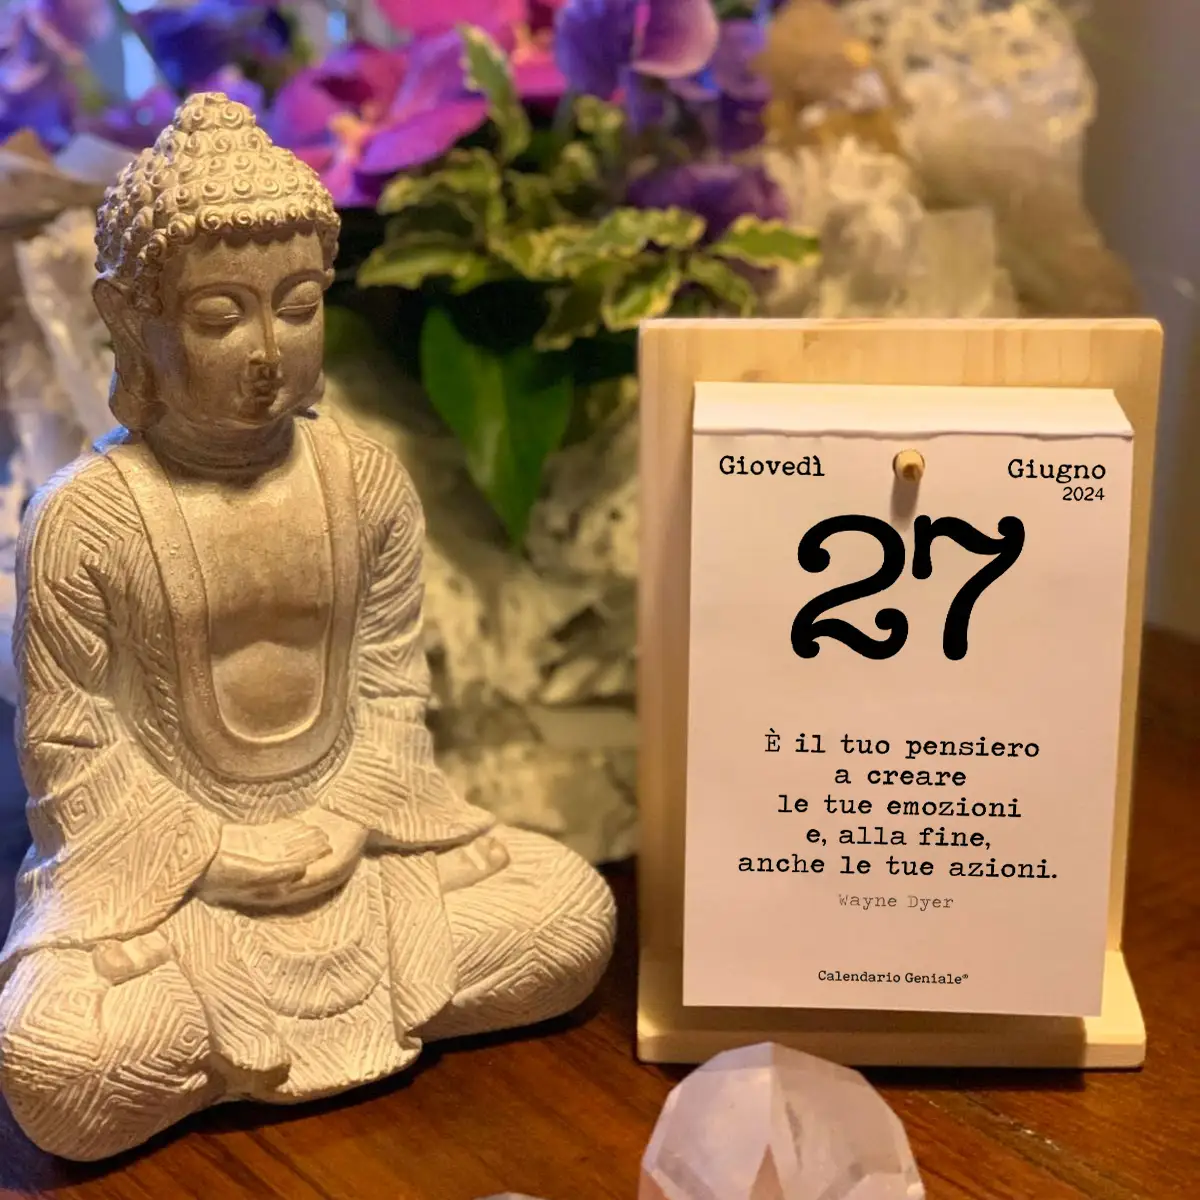 Calendario Geniale con statua Buddha e composizione floreale